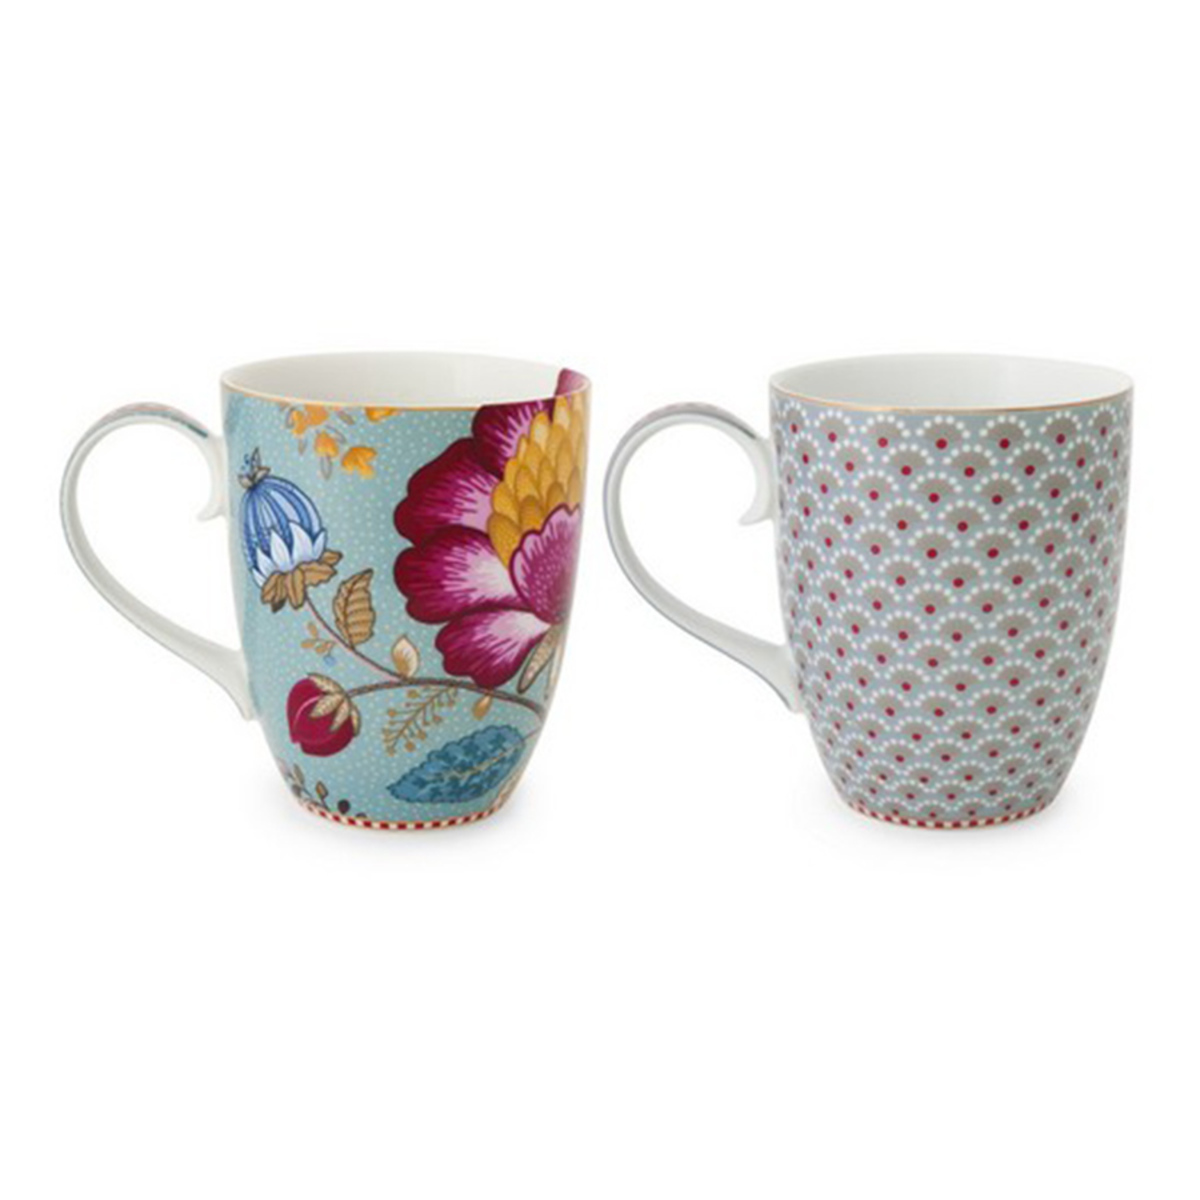 Coffret de 2 mugs en porcelaine fantasy floral bleu